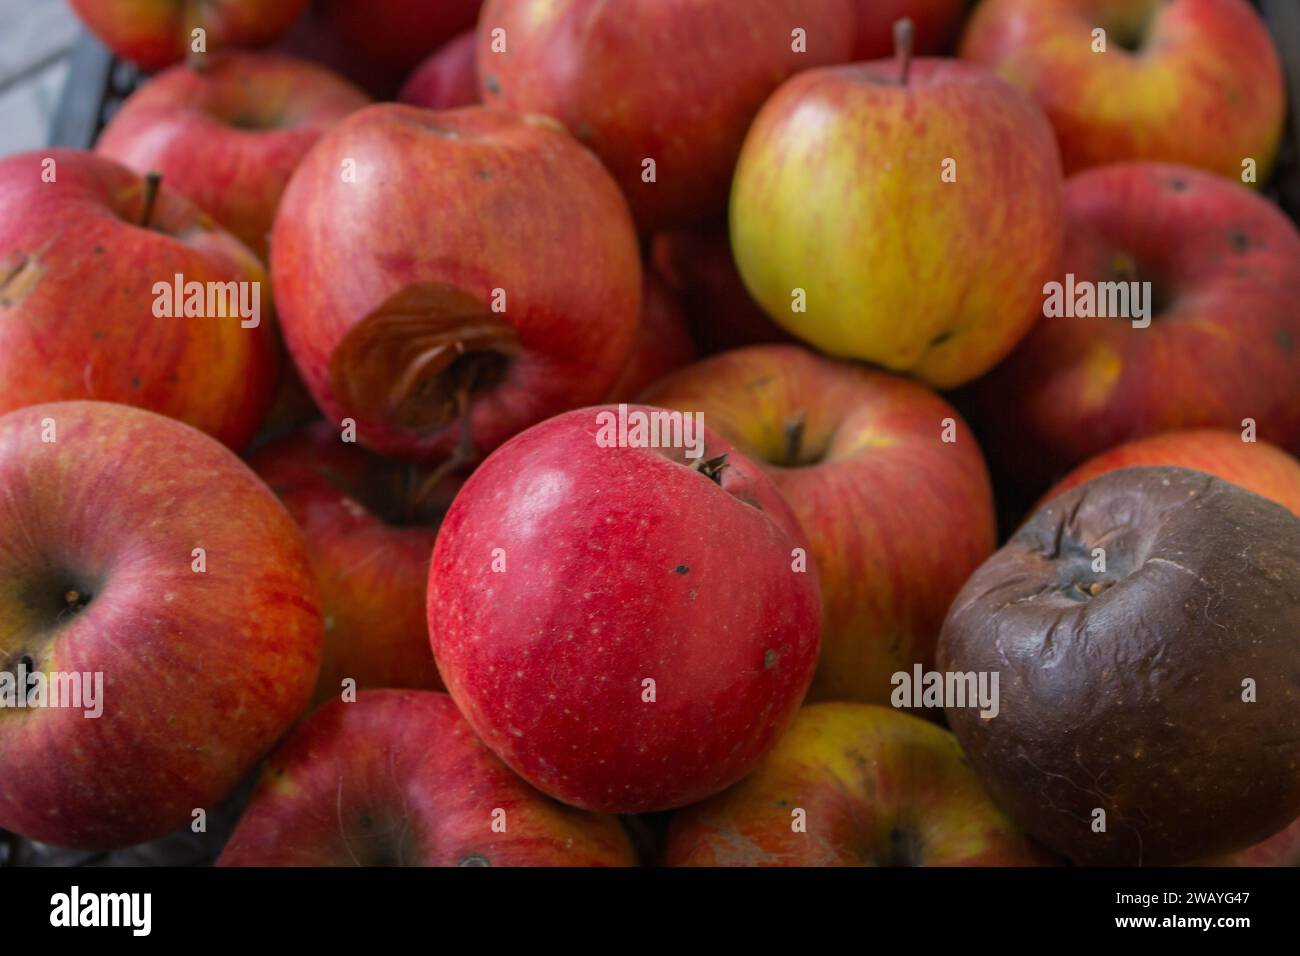 Fond rouge de pommes fraîches et pourries. Fruits de pomme mûrs rouges sur le marché. Récolte hivernale. Fruits juteux sucrés. Récolte de jardin. Mauvais et bon. Banque D'Images